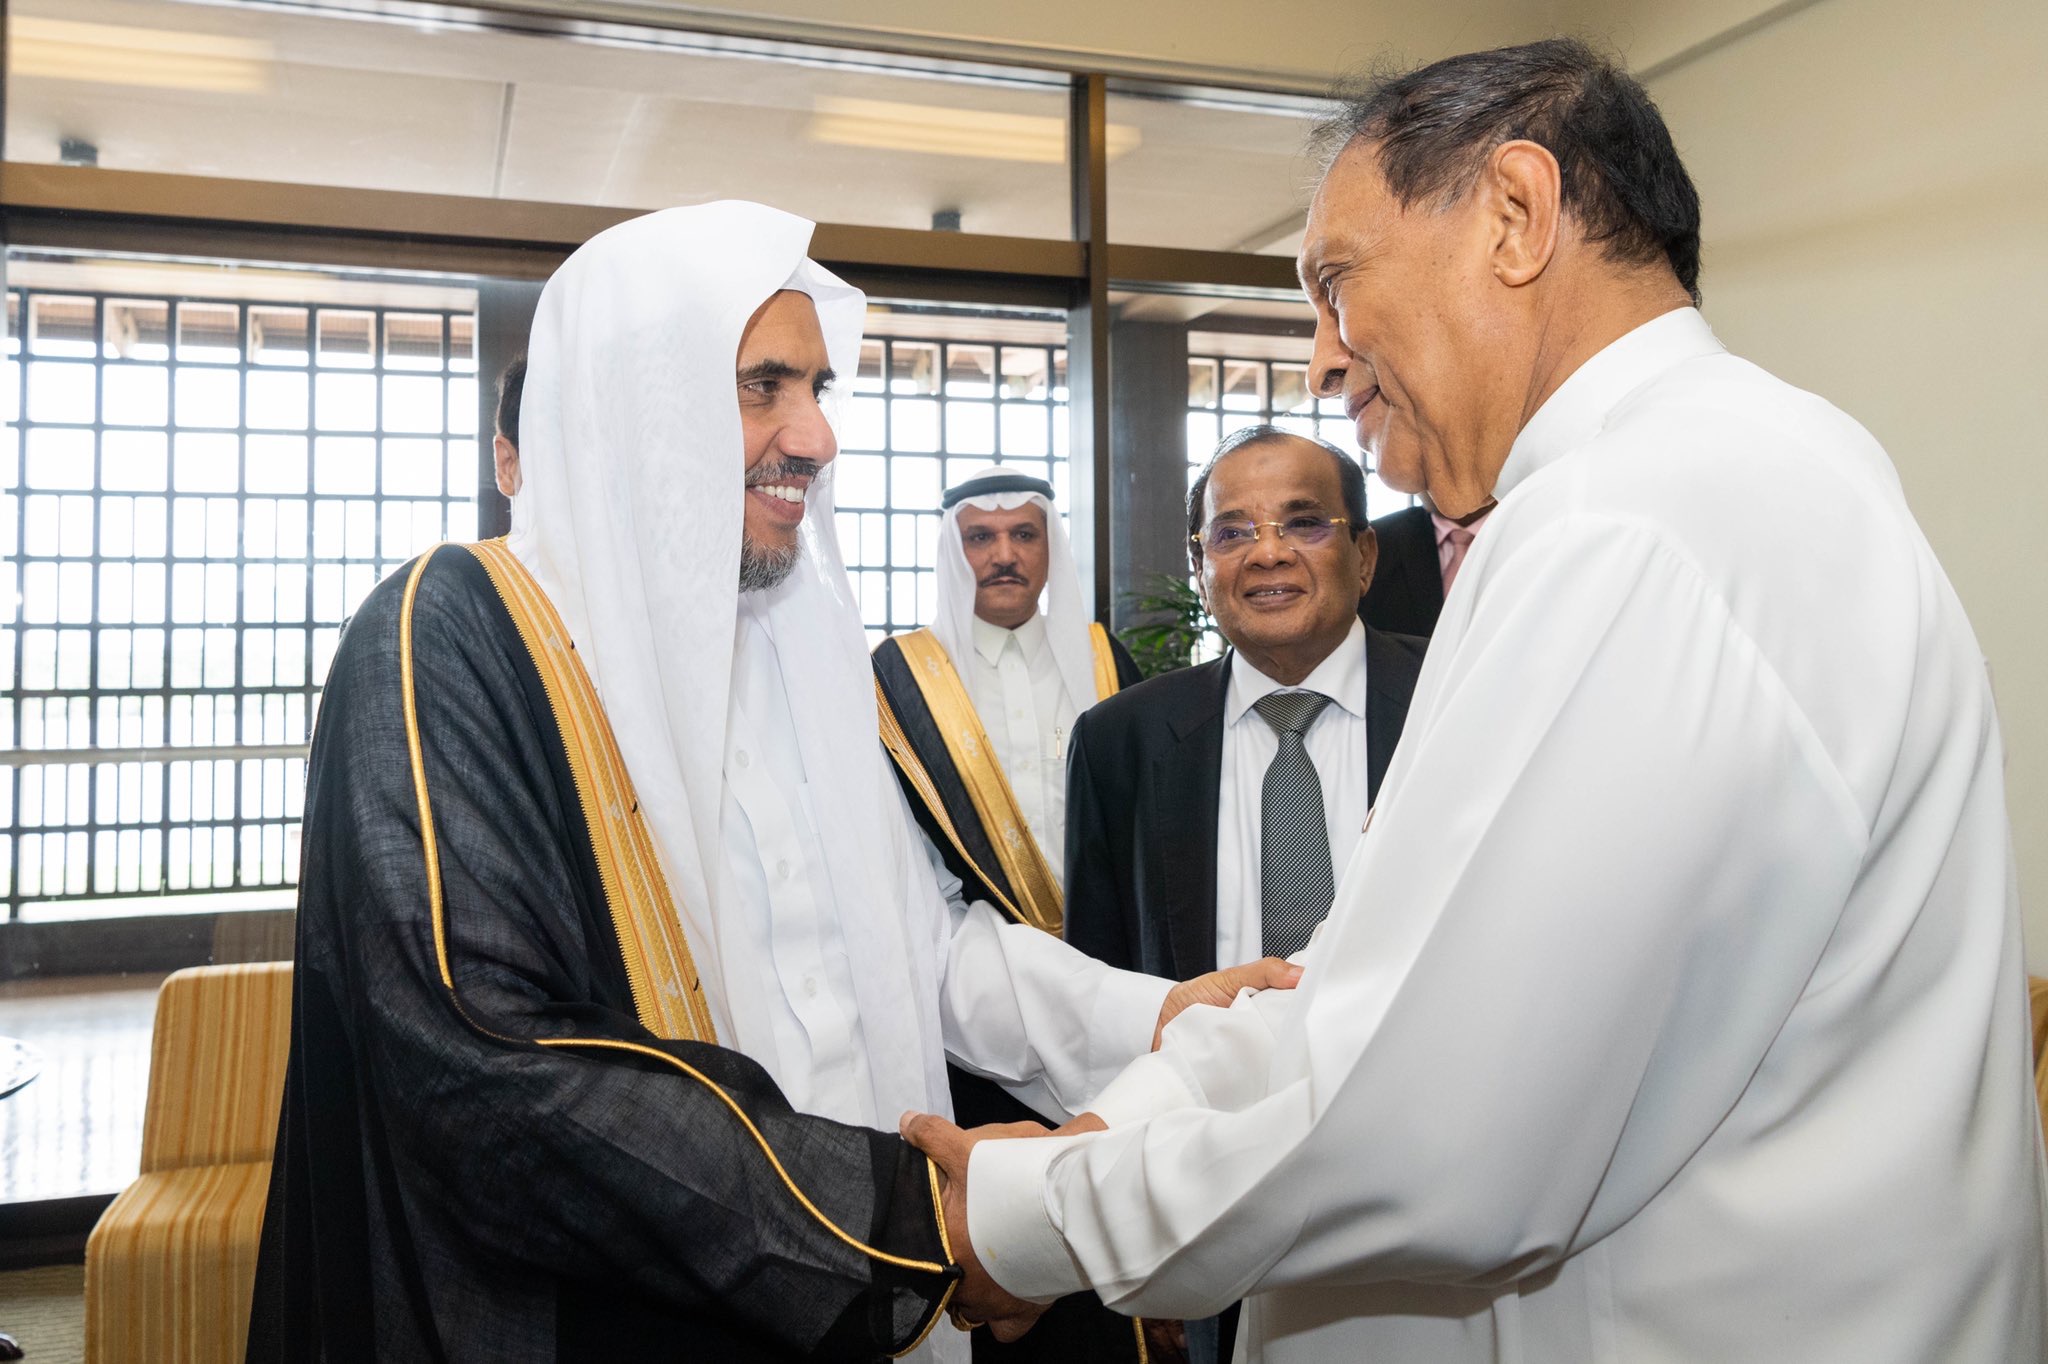 Le Président du Parlement sri lankais célèbre la venue du Secrétaire général de la Ligue Islamique Mondiale au Parlement où il a loué sa visite en cette période qui aide à l’harmonie nationale suite aux attentats qui ont touché le pays.